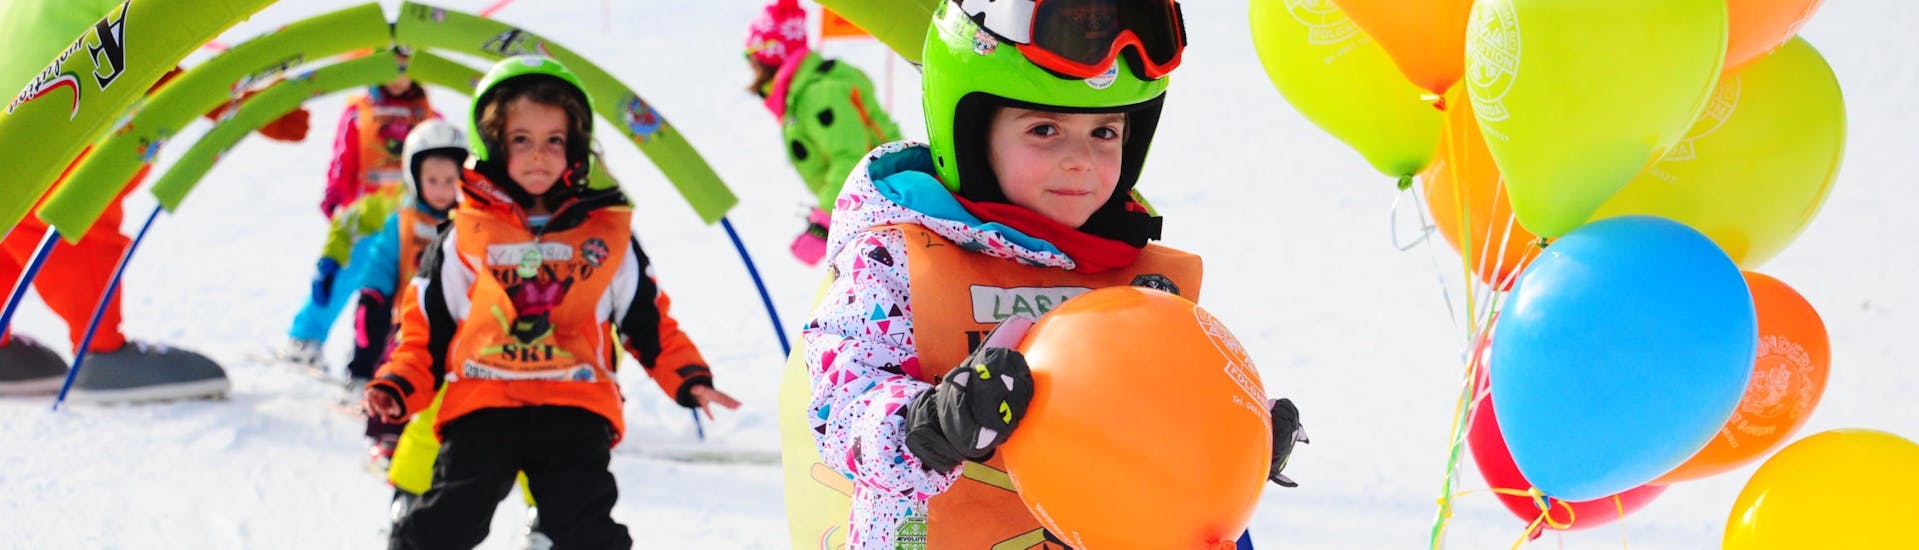 De kinderskilessen (4-13 jaar) - Alle niveaus van de AEvolution Folgarida Skischool vinden plaats op het schoolplein; het kind overwon de obstakels en verdiende een ballon.